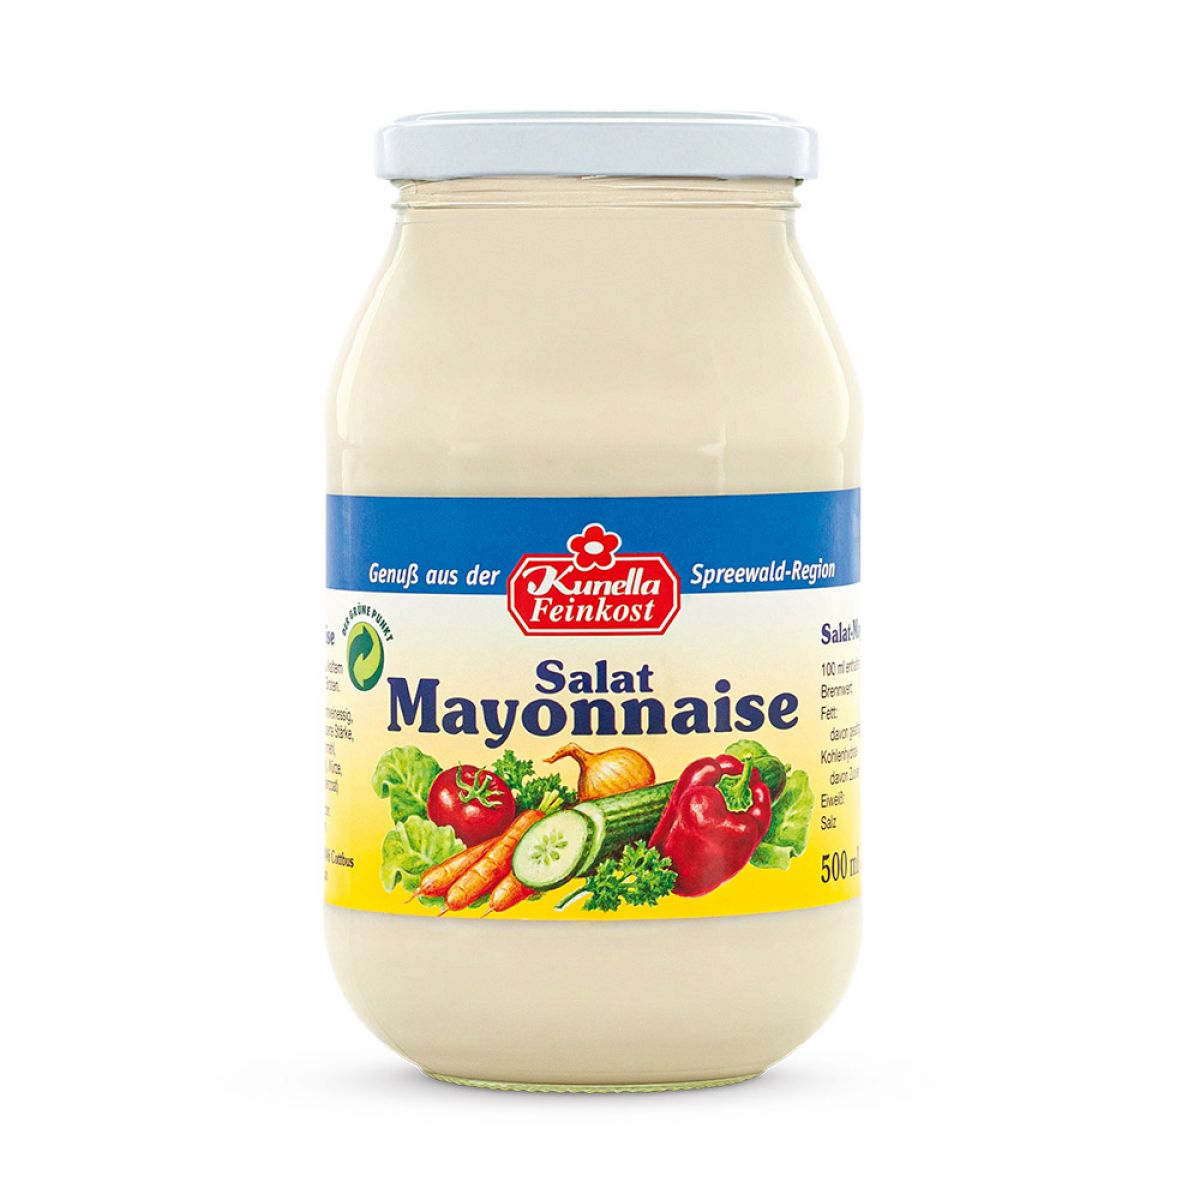 Salat Mayonnaise 50% Rapsöl 500ml - Kunella Feinkost GmbH